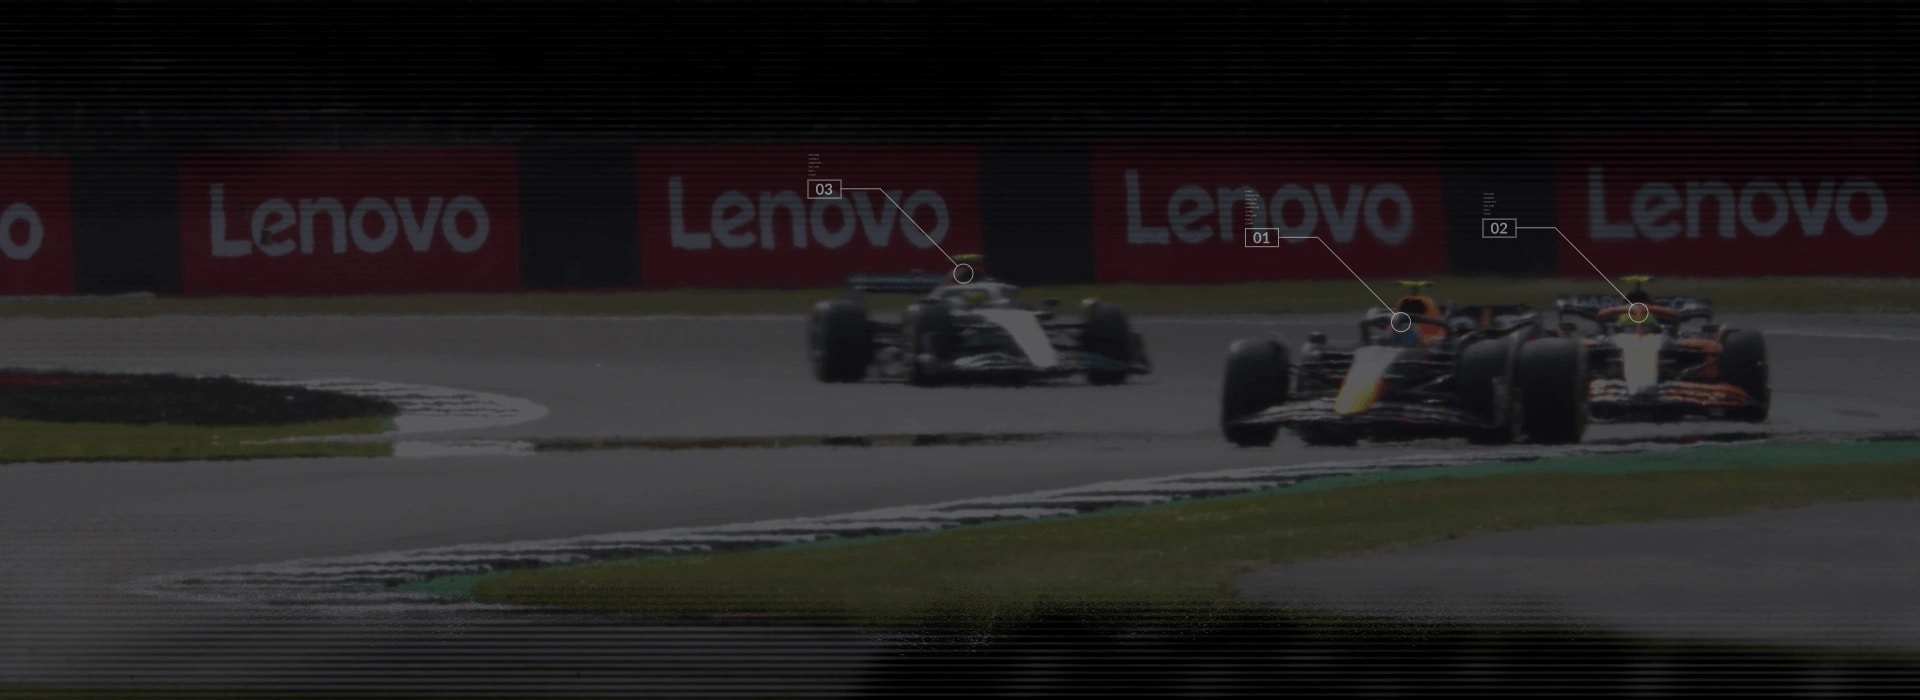 3 машини F1 на гоночному треку з банерами Lenovo на задньому плані